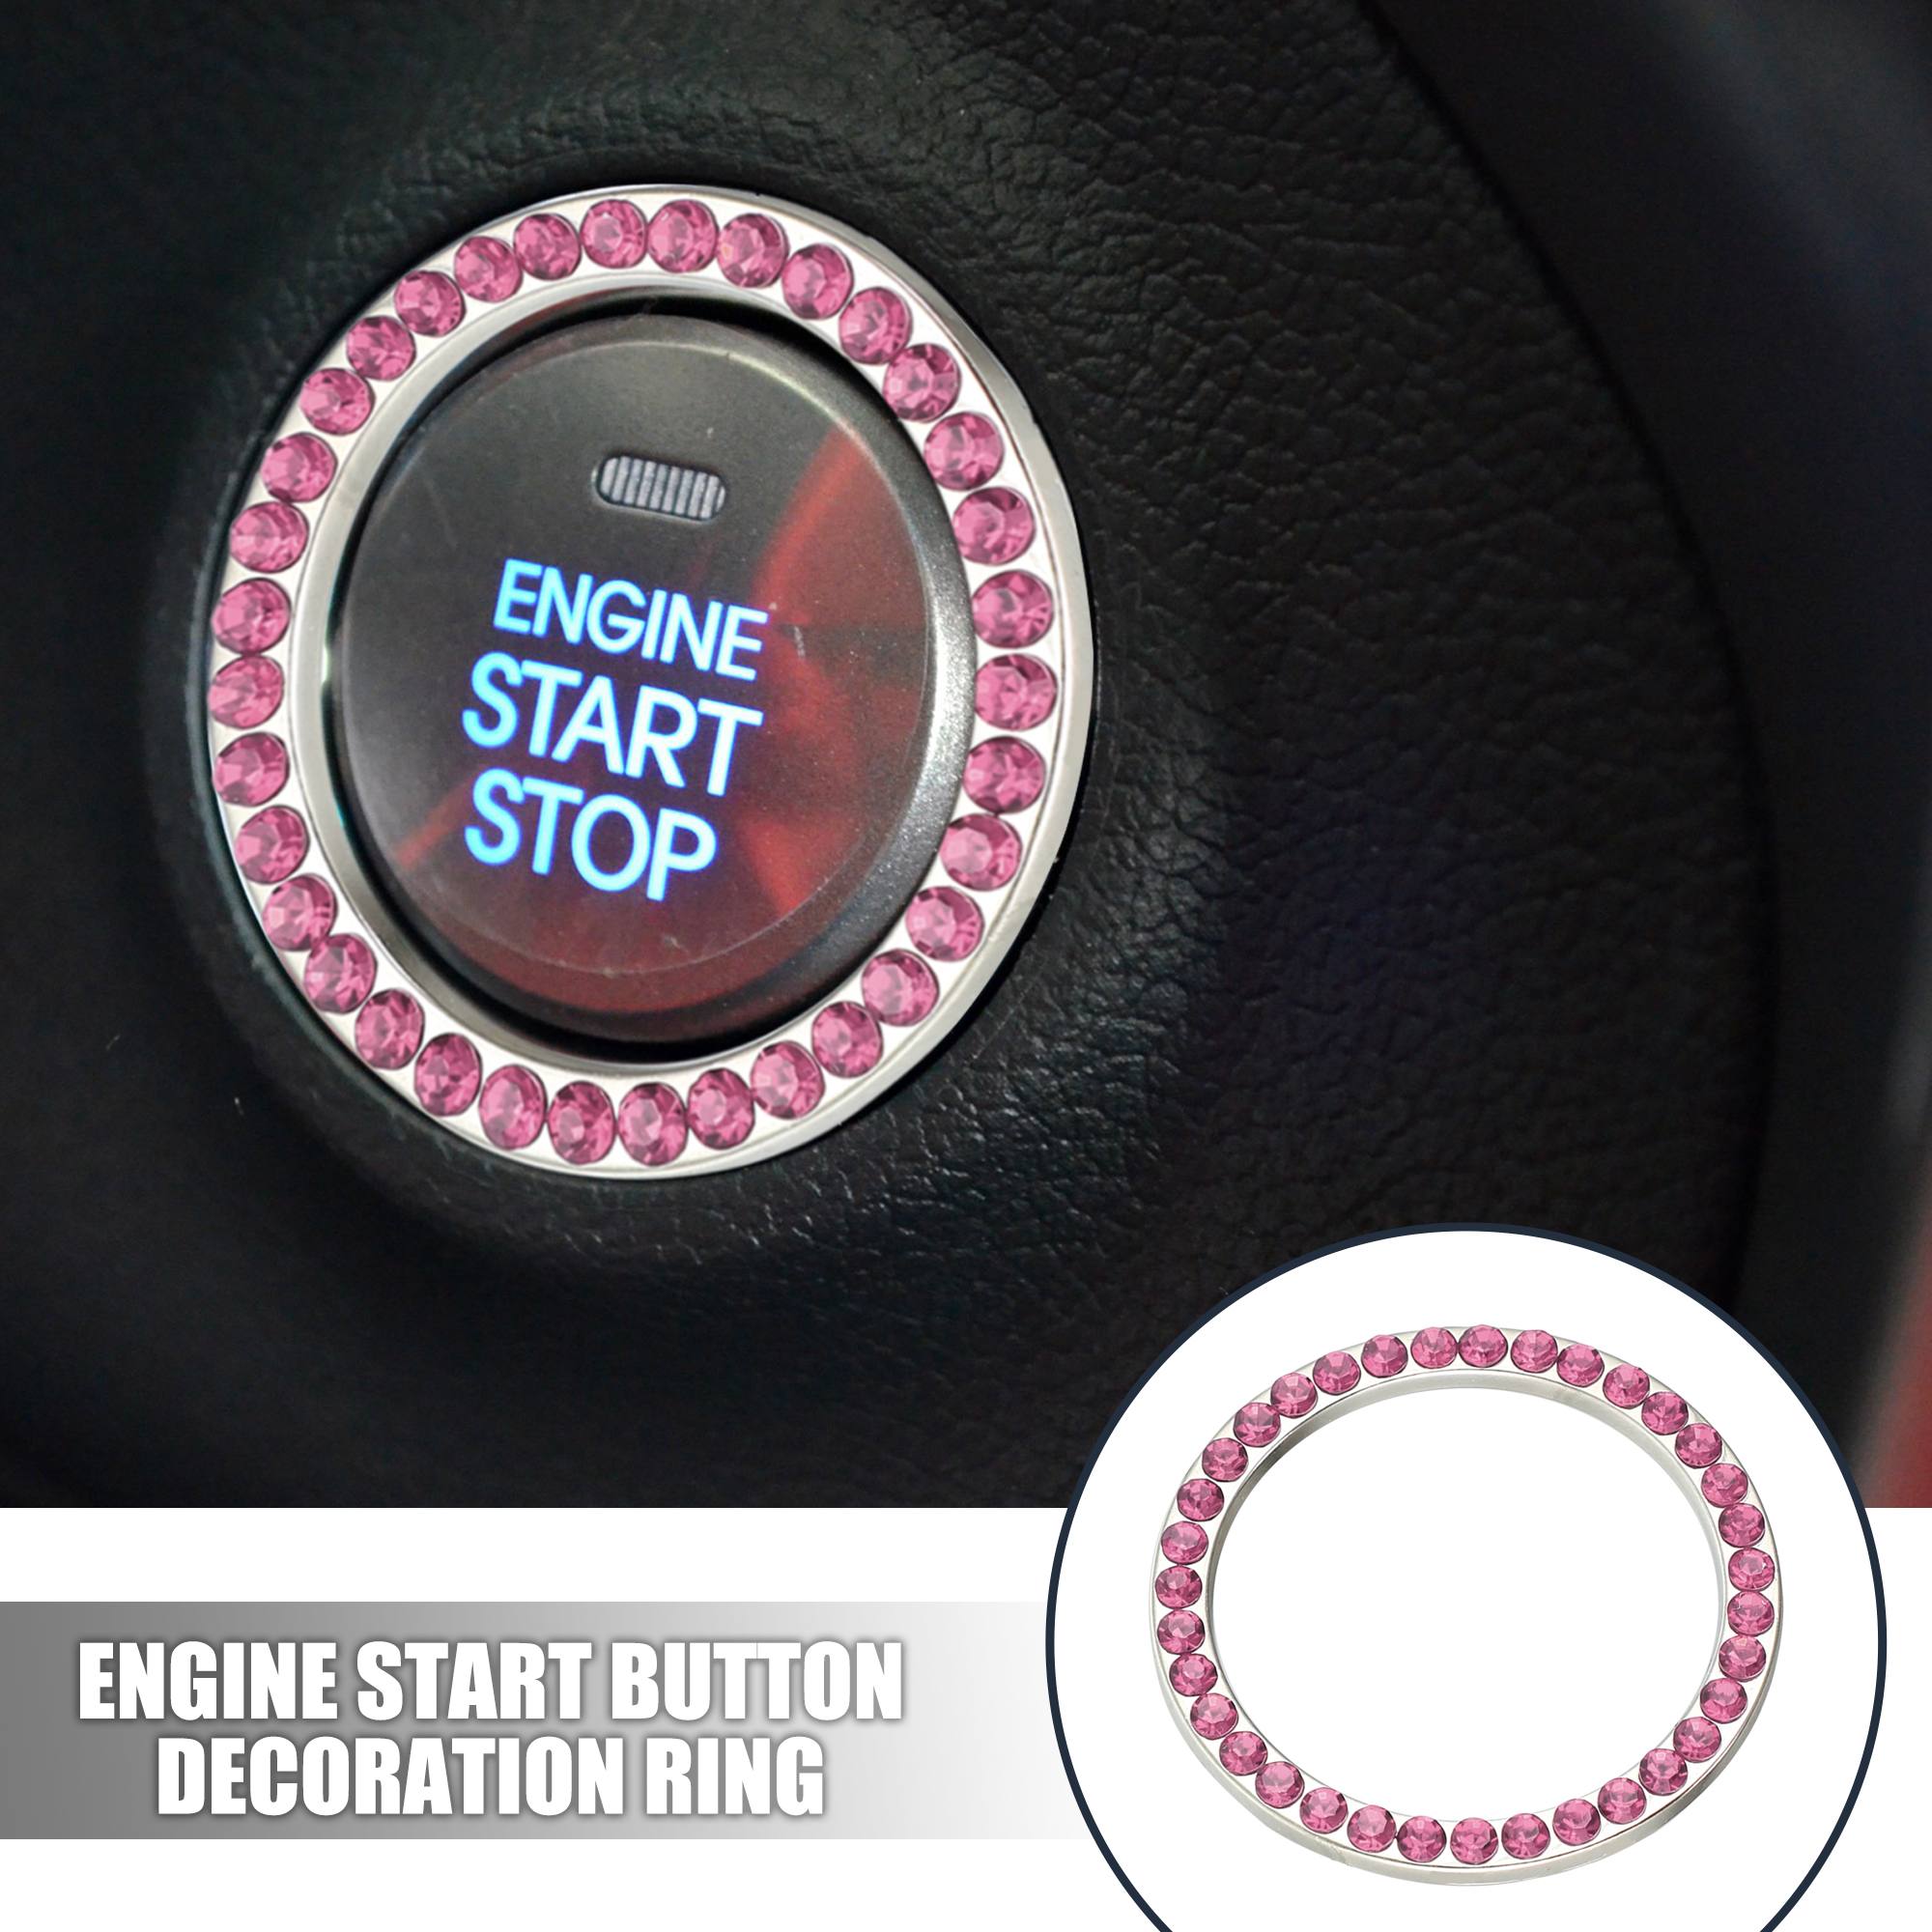 Unique Bargains 5 Pcs Car Engine Start Stop Decoration Ring Push Start Button Knob Trim Pink